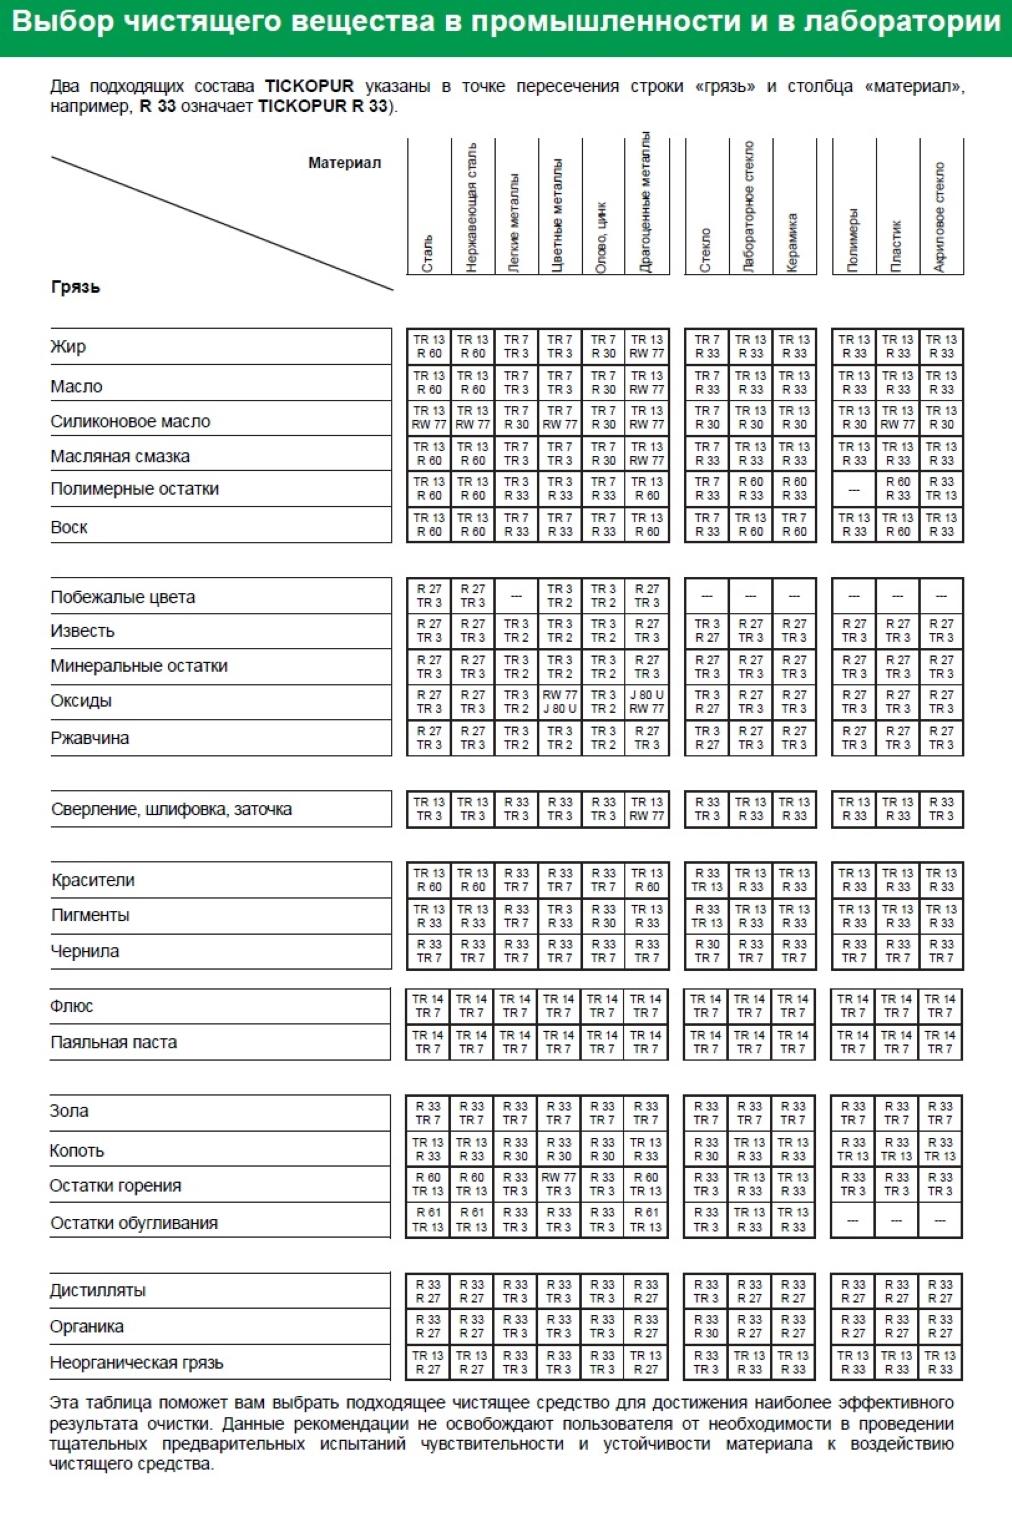 Таблица выбора чистящего вещества R 27 TICKOPUR